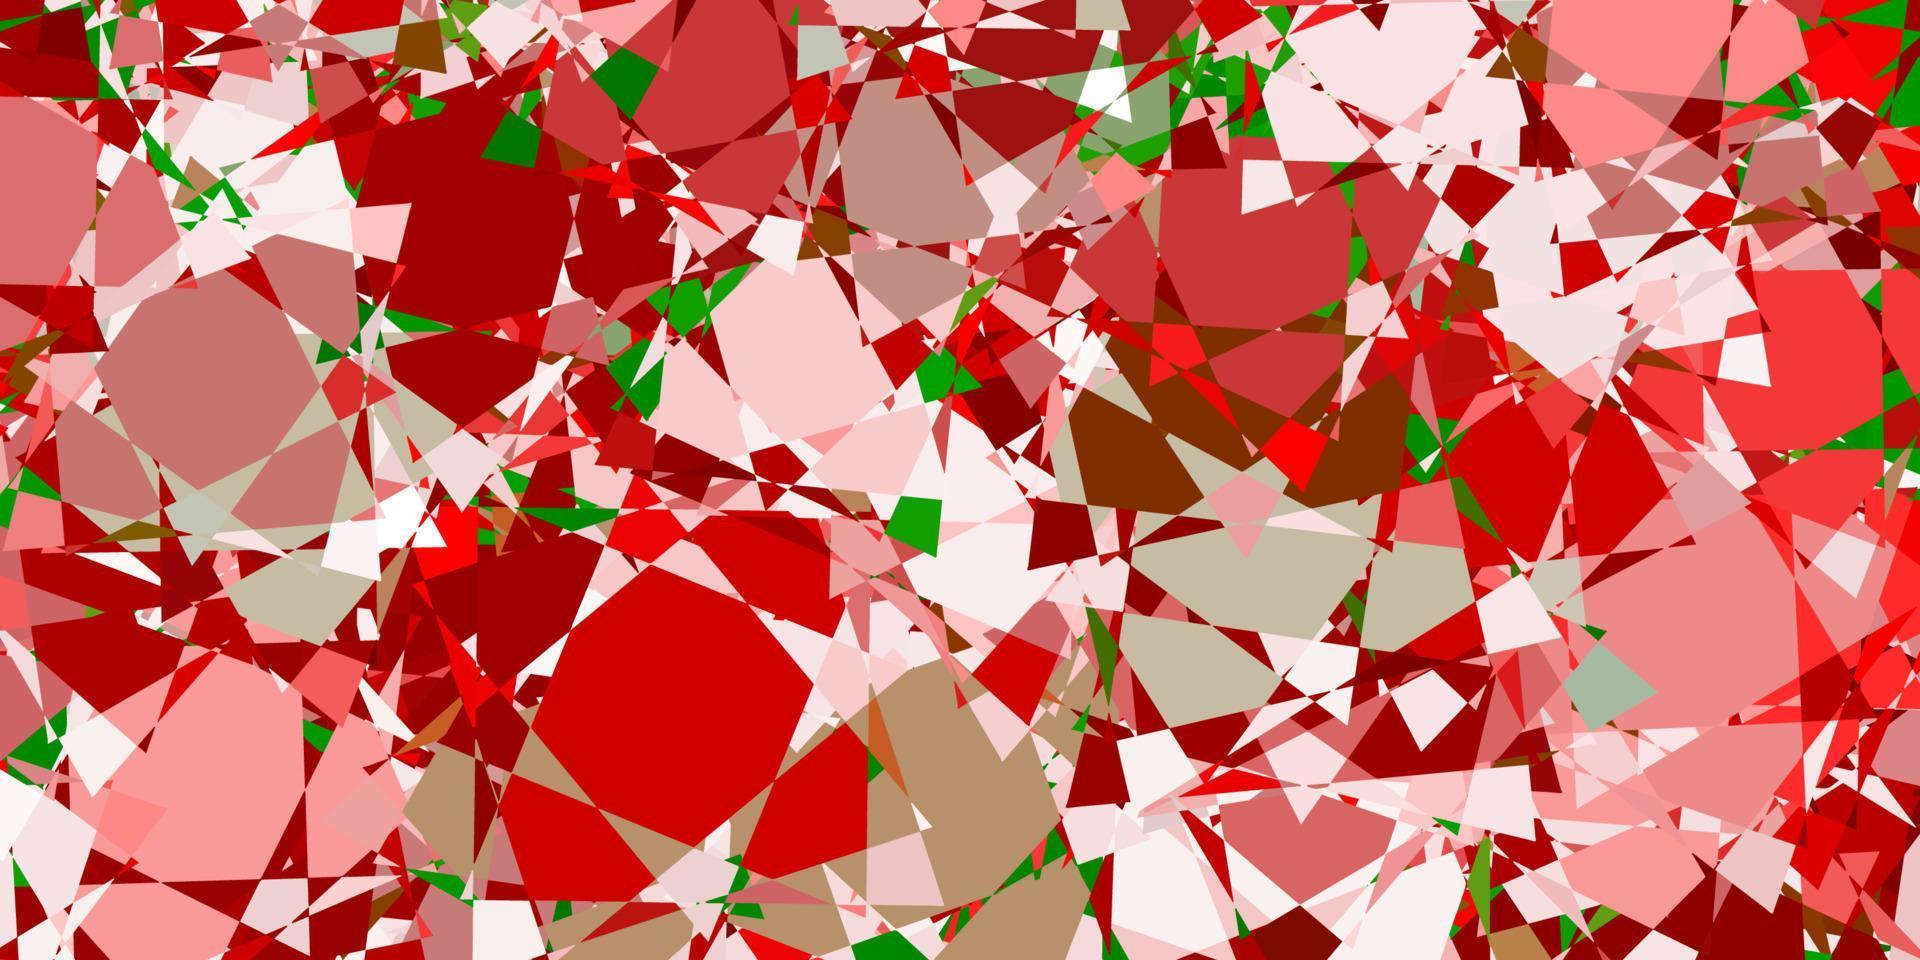 textura de vetor verde e vermelho claro com triângulos aleatórios.